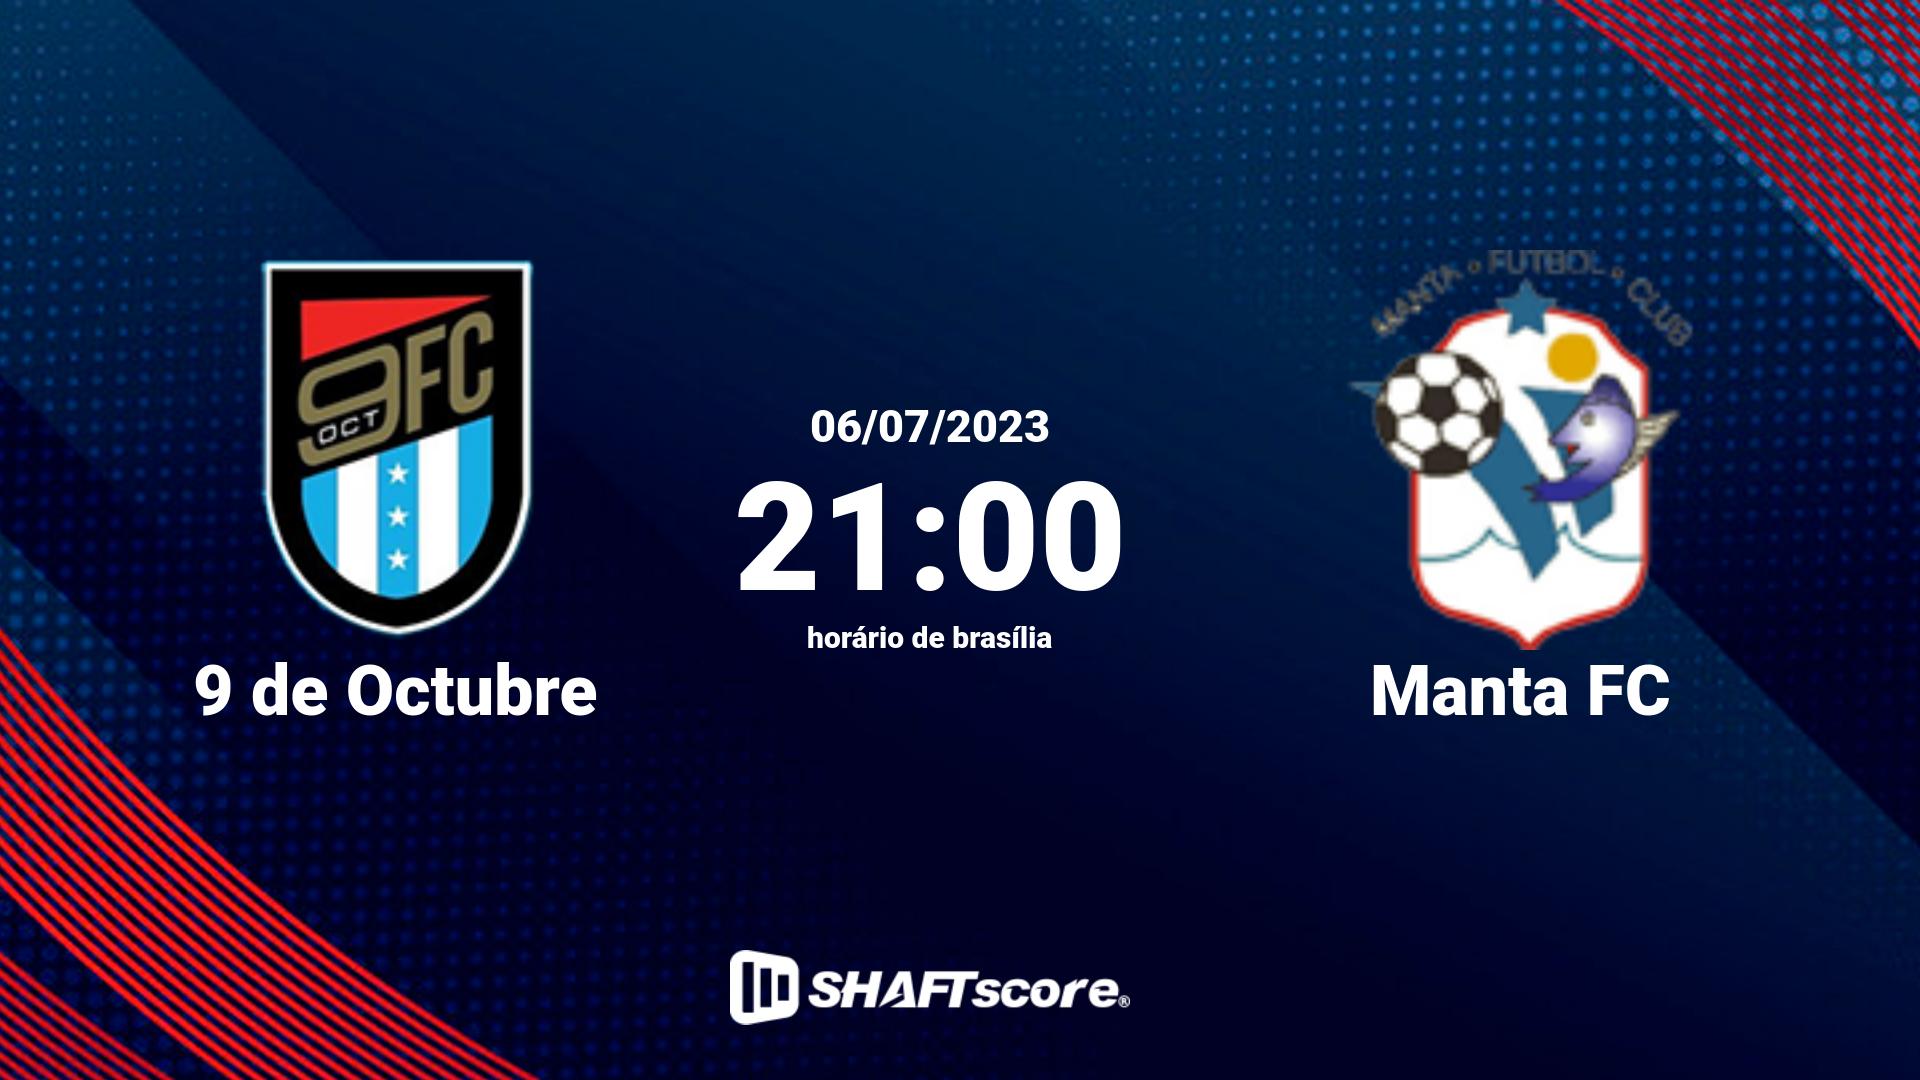 Estatísticas do jogo 9 de Octubre vs Manta FC 06.07 21:00